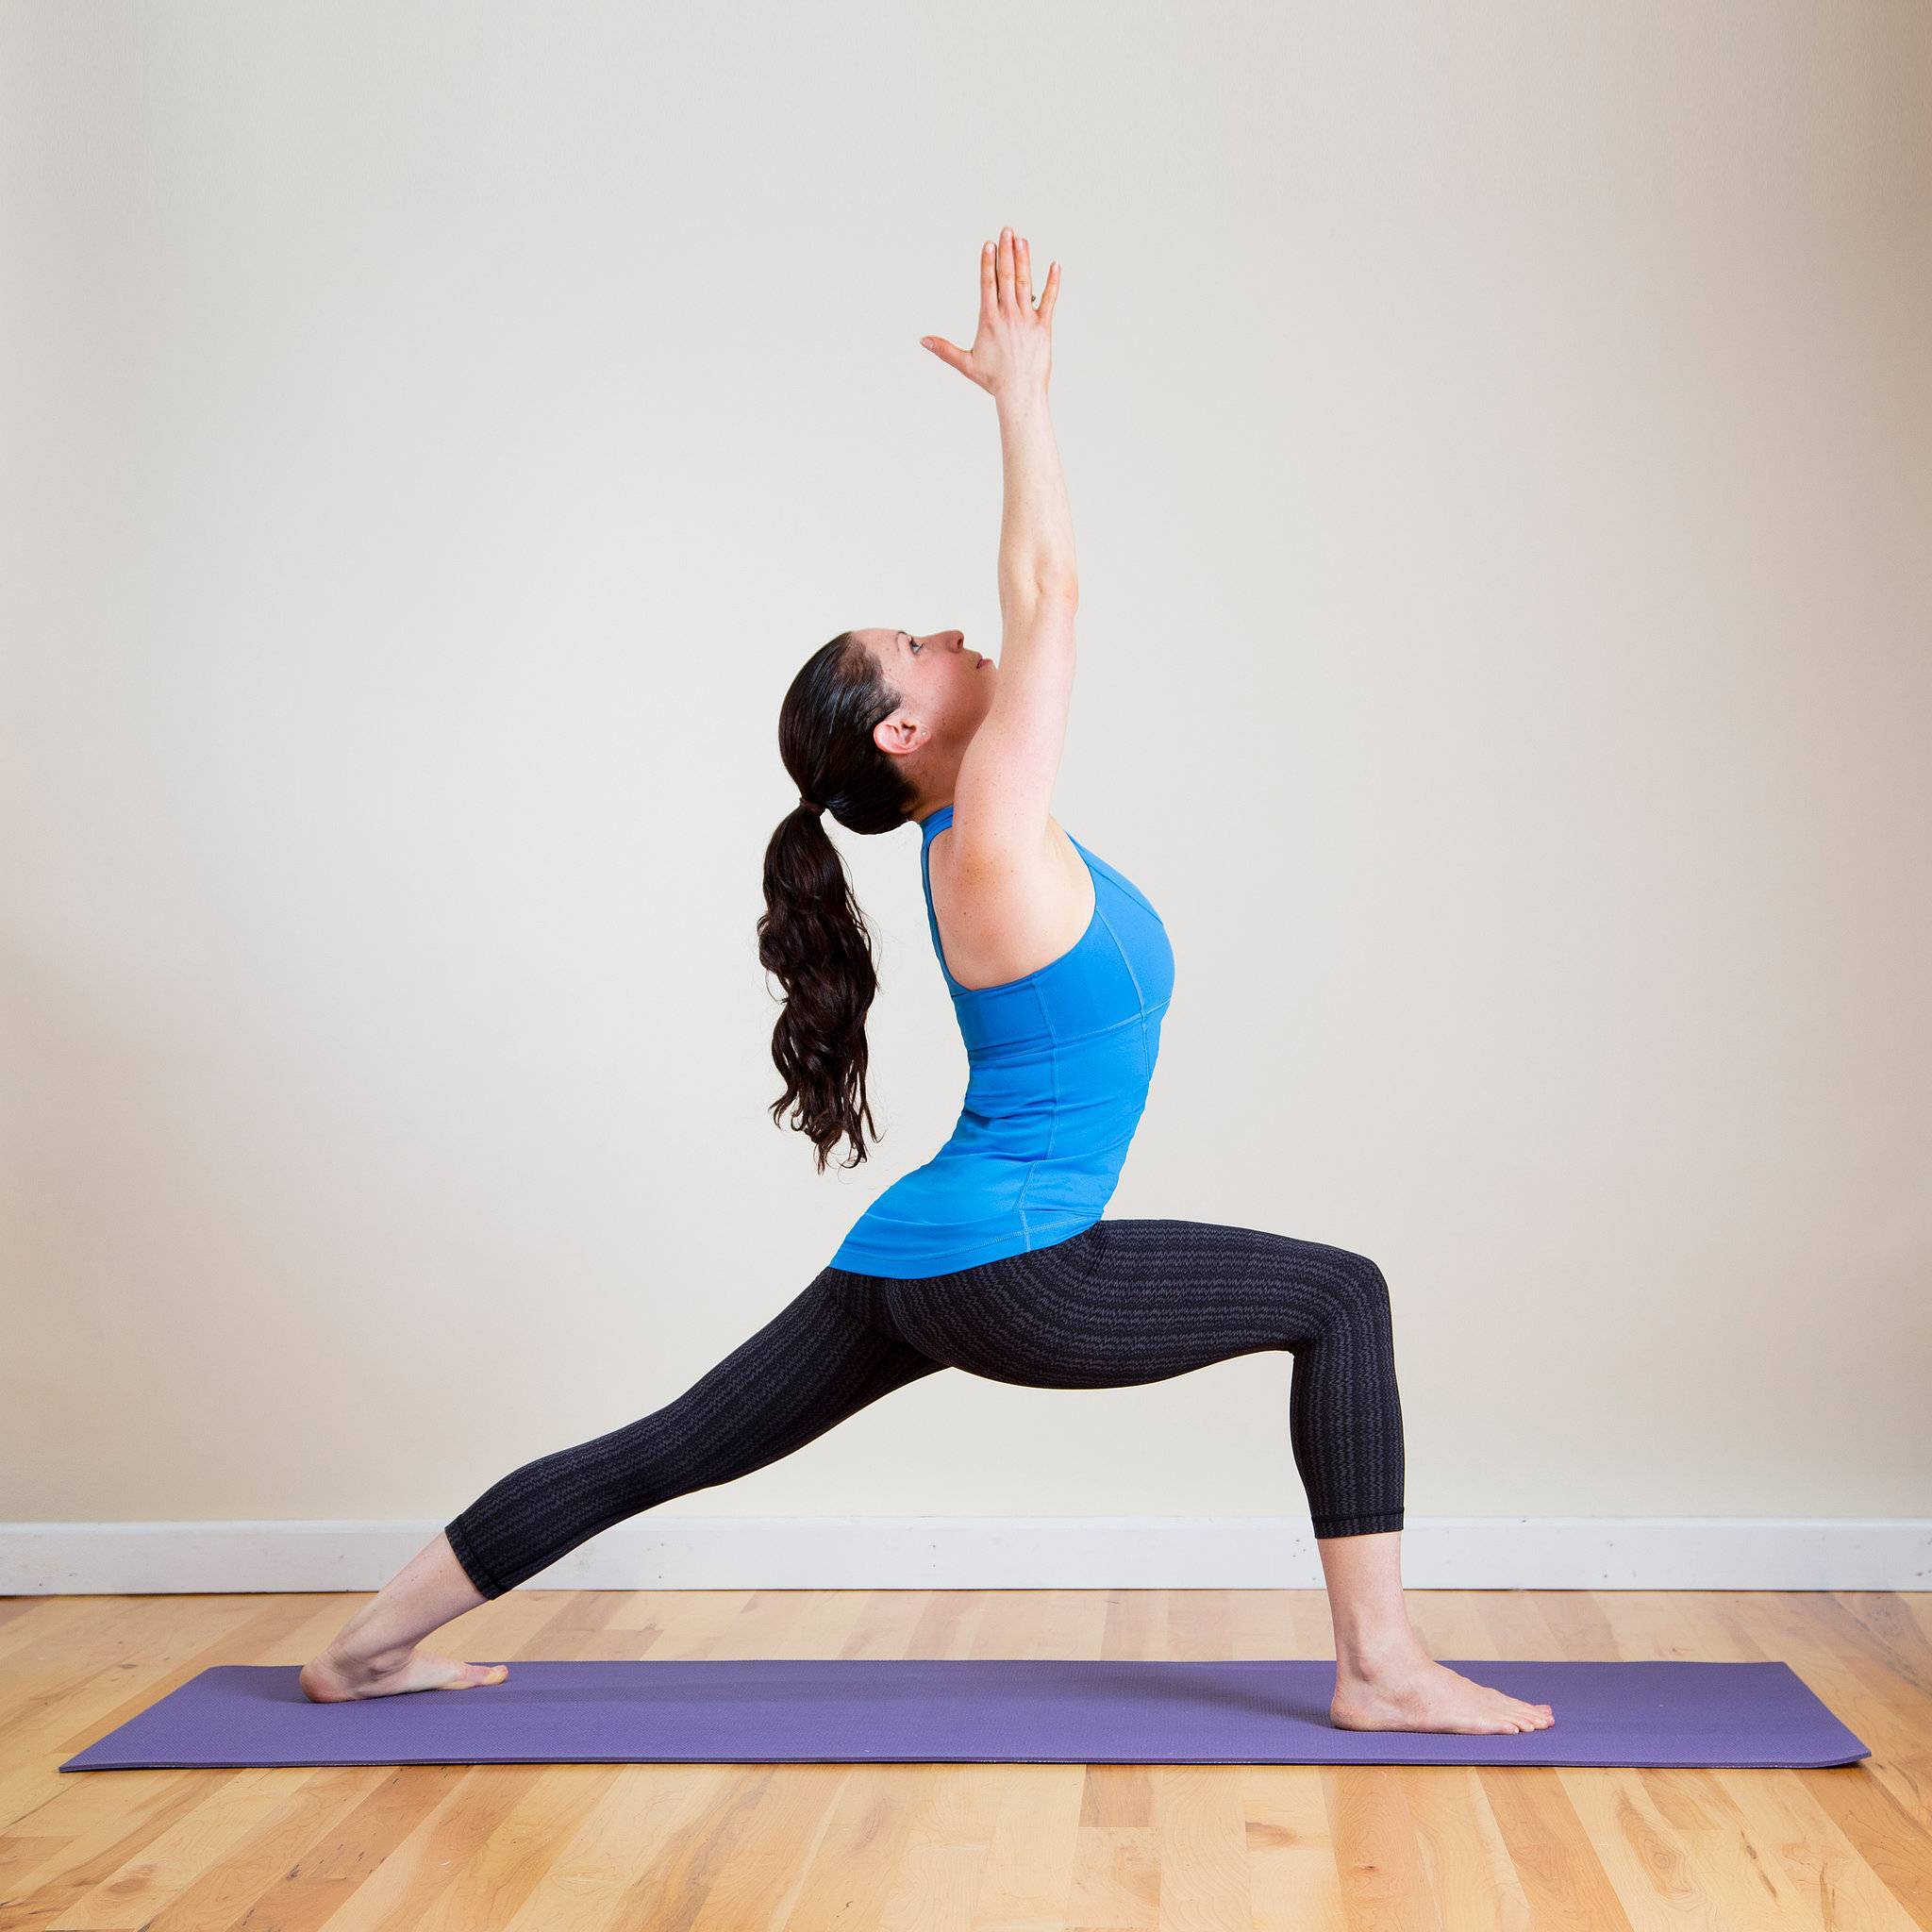 Парная йога: суть и польза, что необходимо для занятий